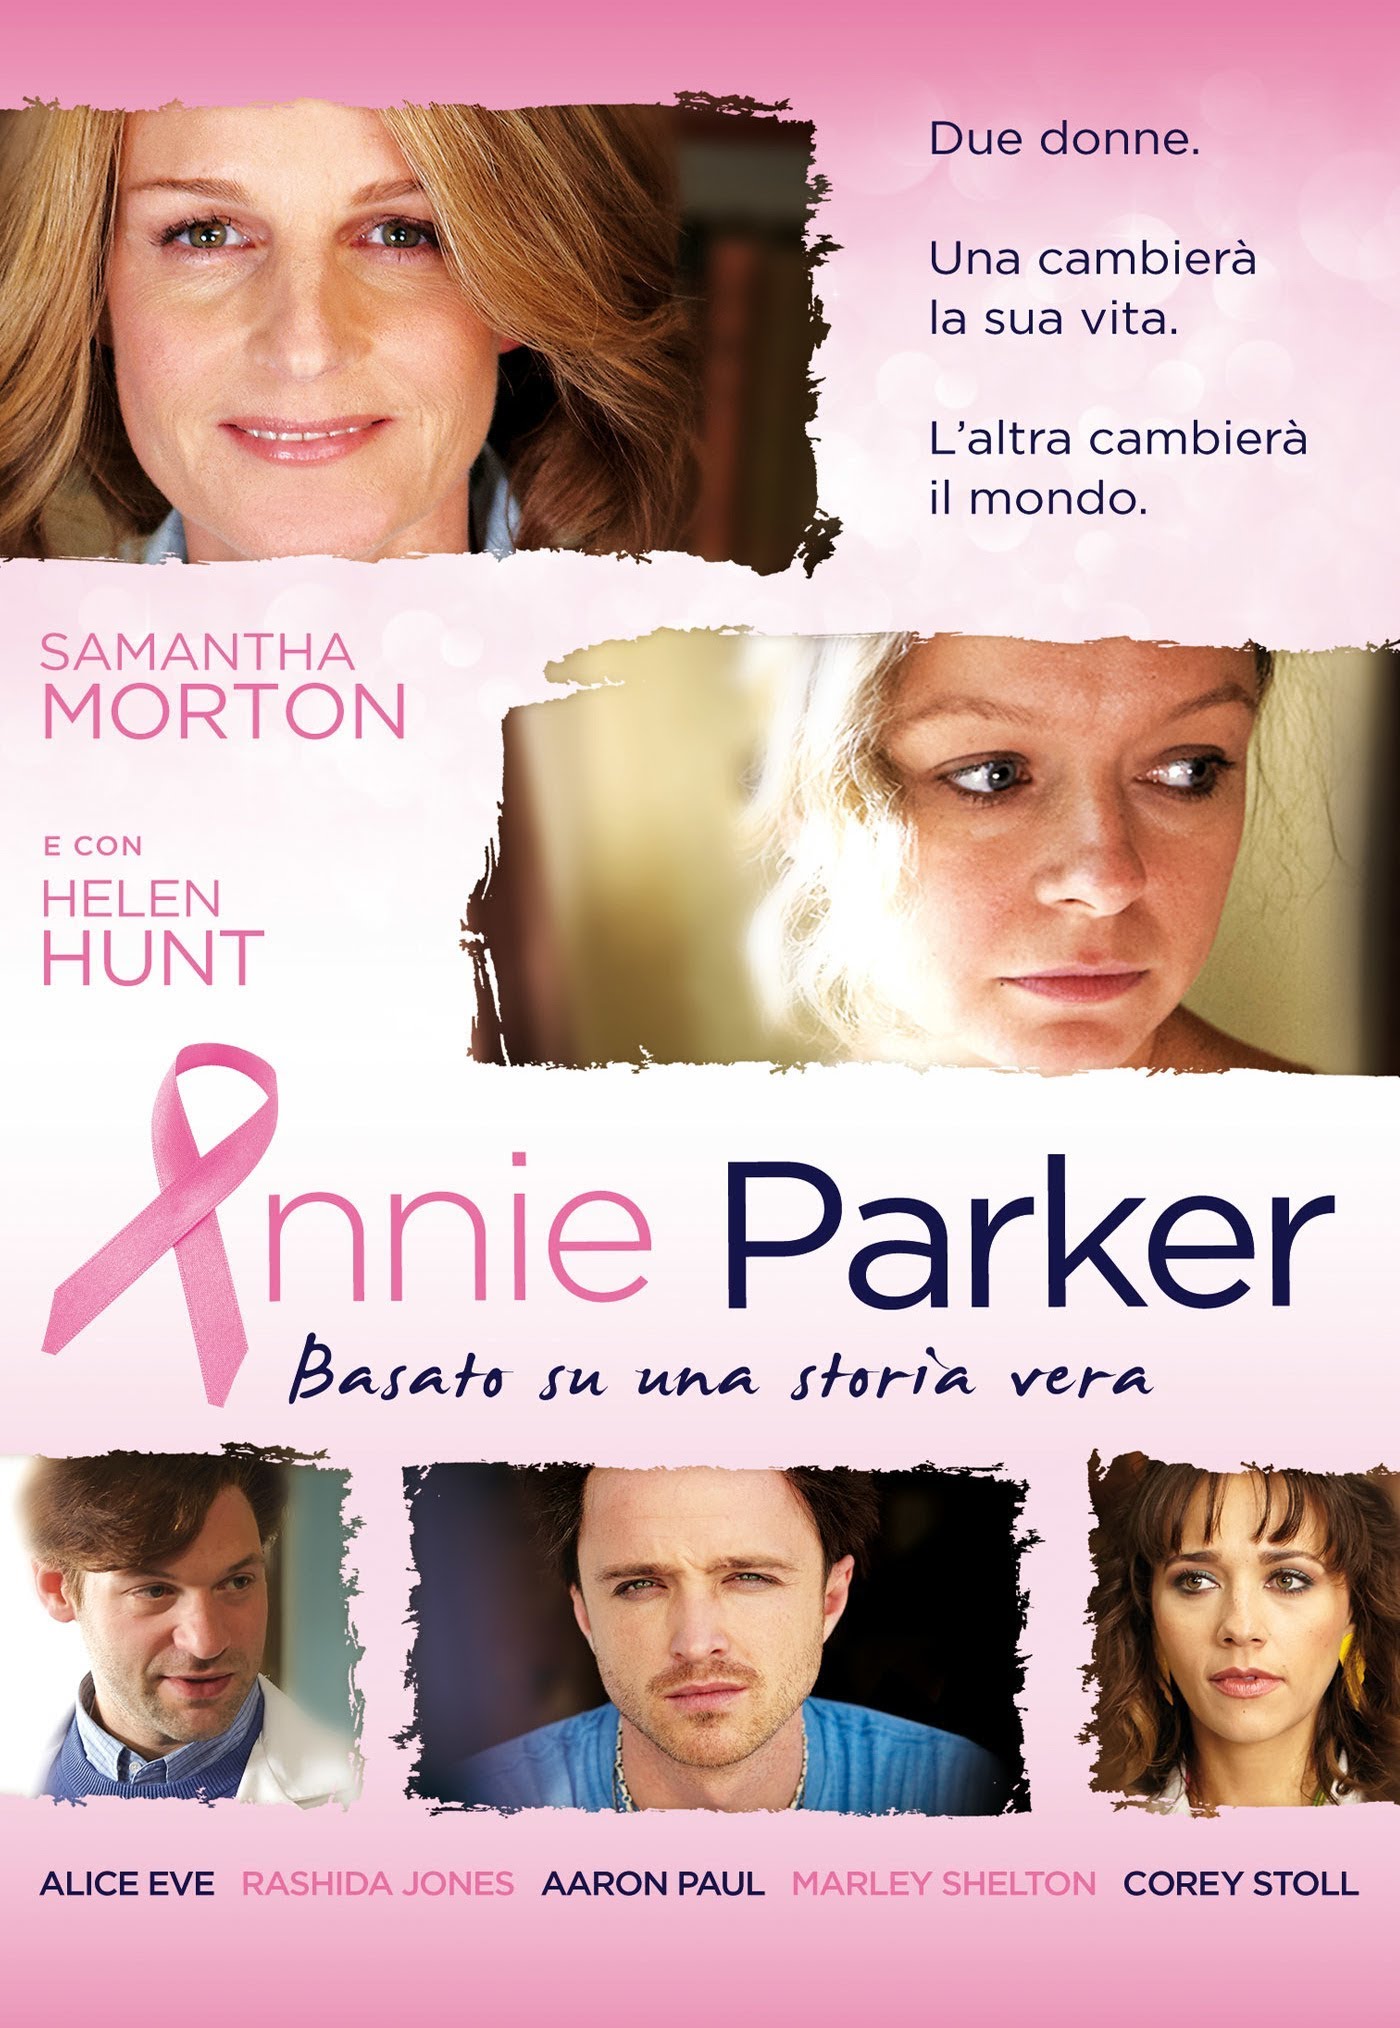 Annie Parker [HD] (2014)